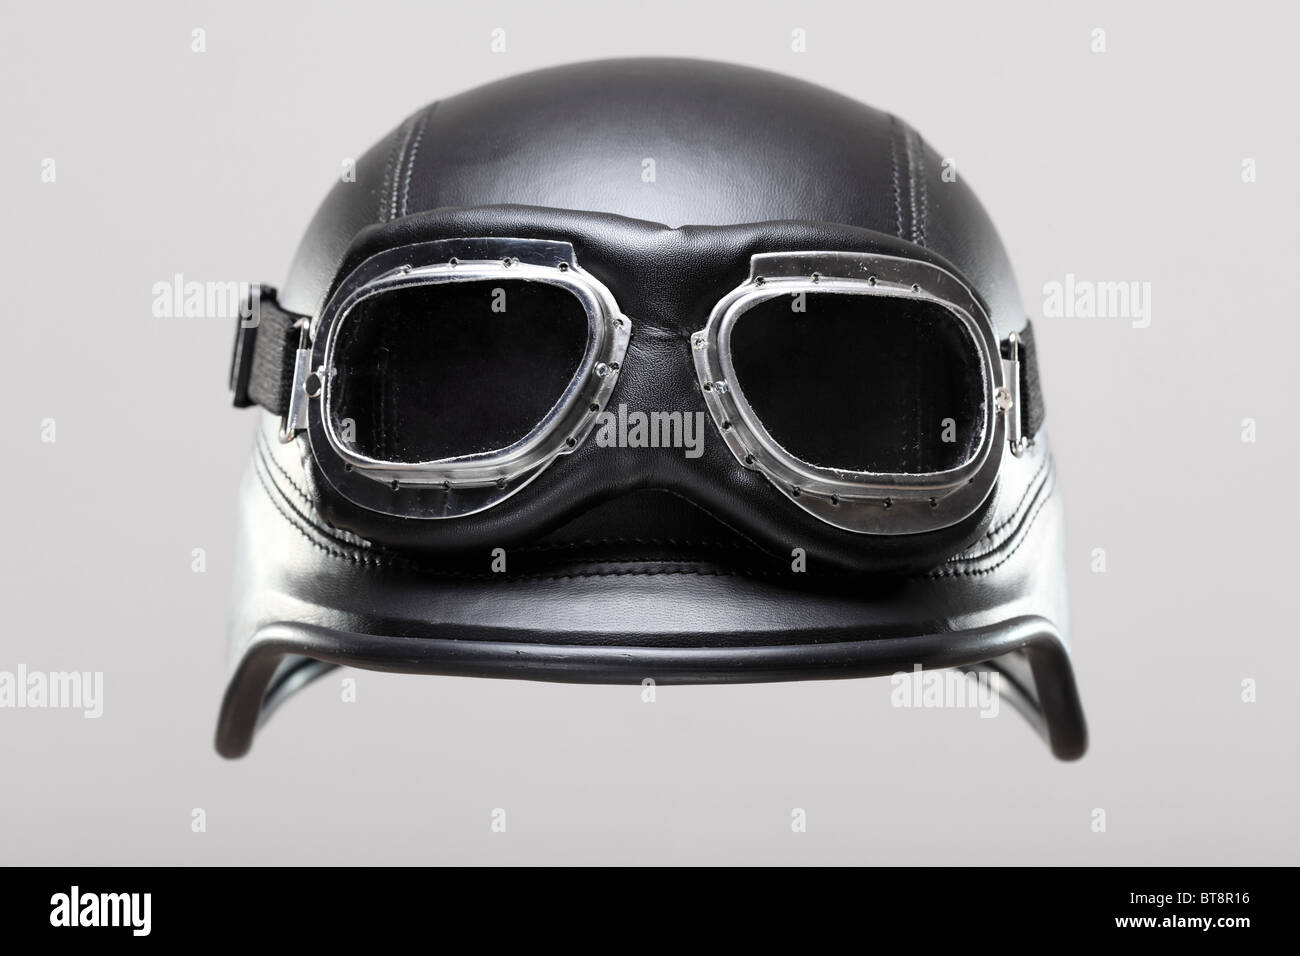 Ancien modèle de moto de l'armée américaine Casque avec lunettes, sur fond gris Banque D'Images